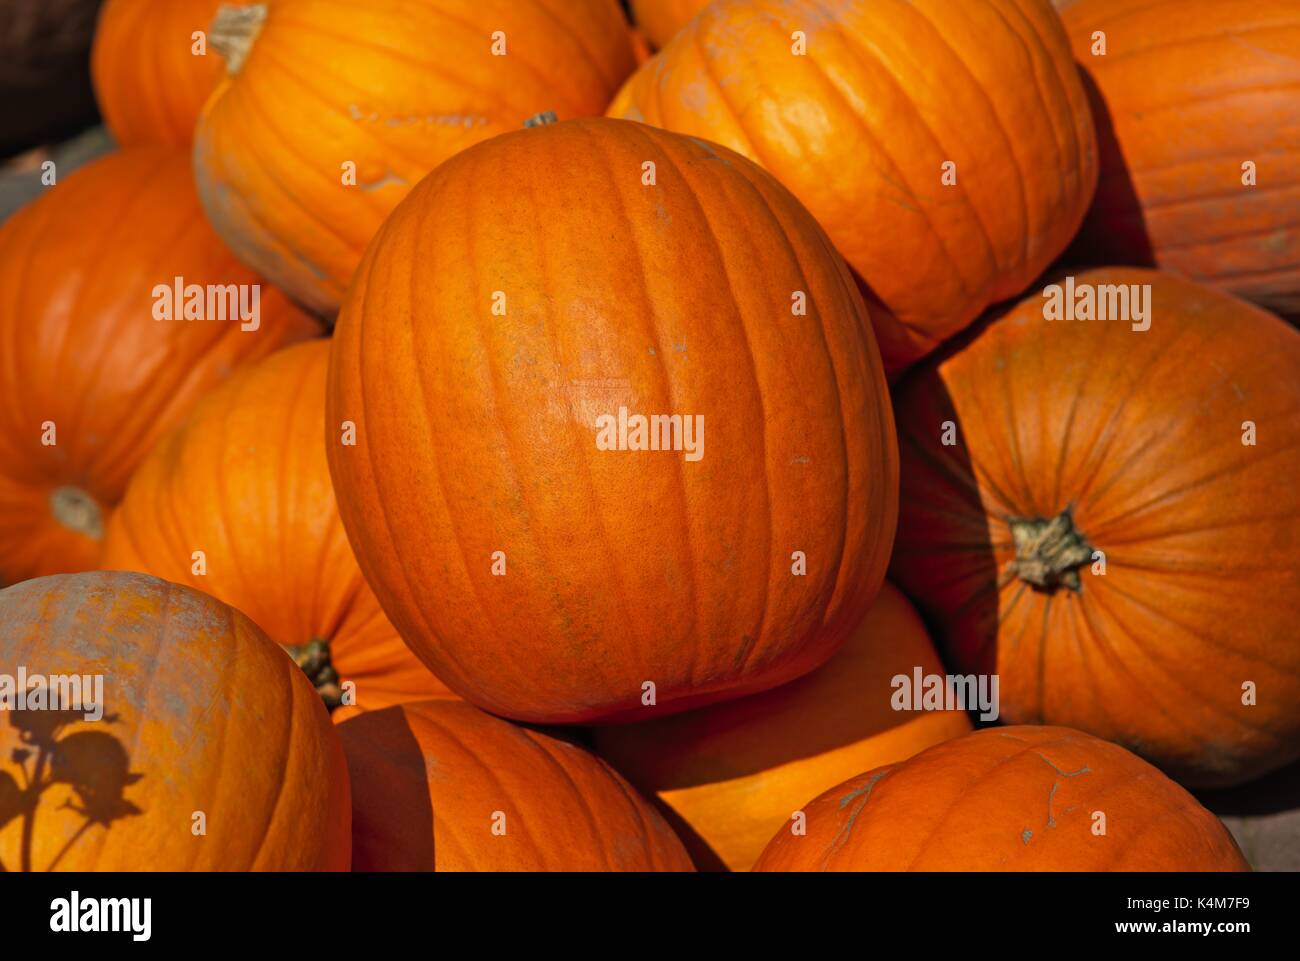 Closeup of pumpkin stacks Stock Photo